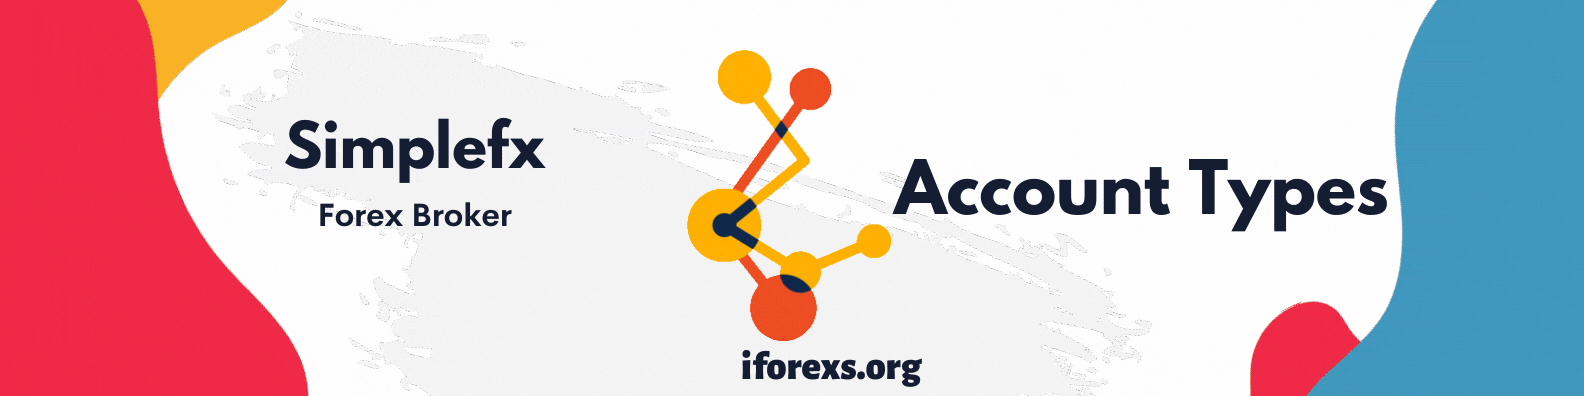 Simplefx Account Types